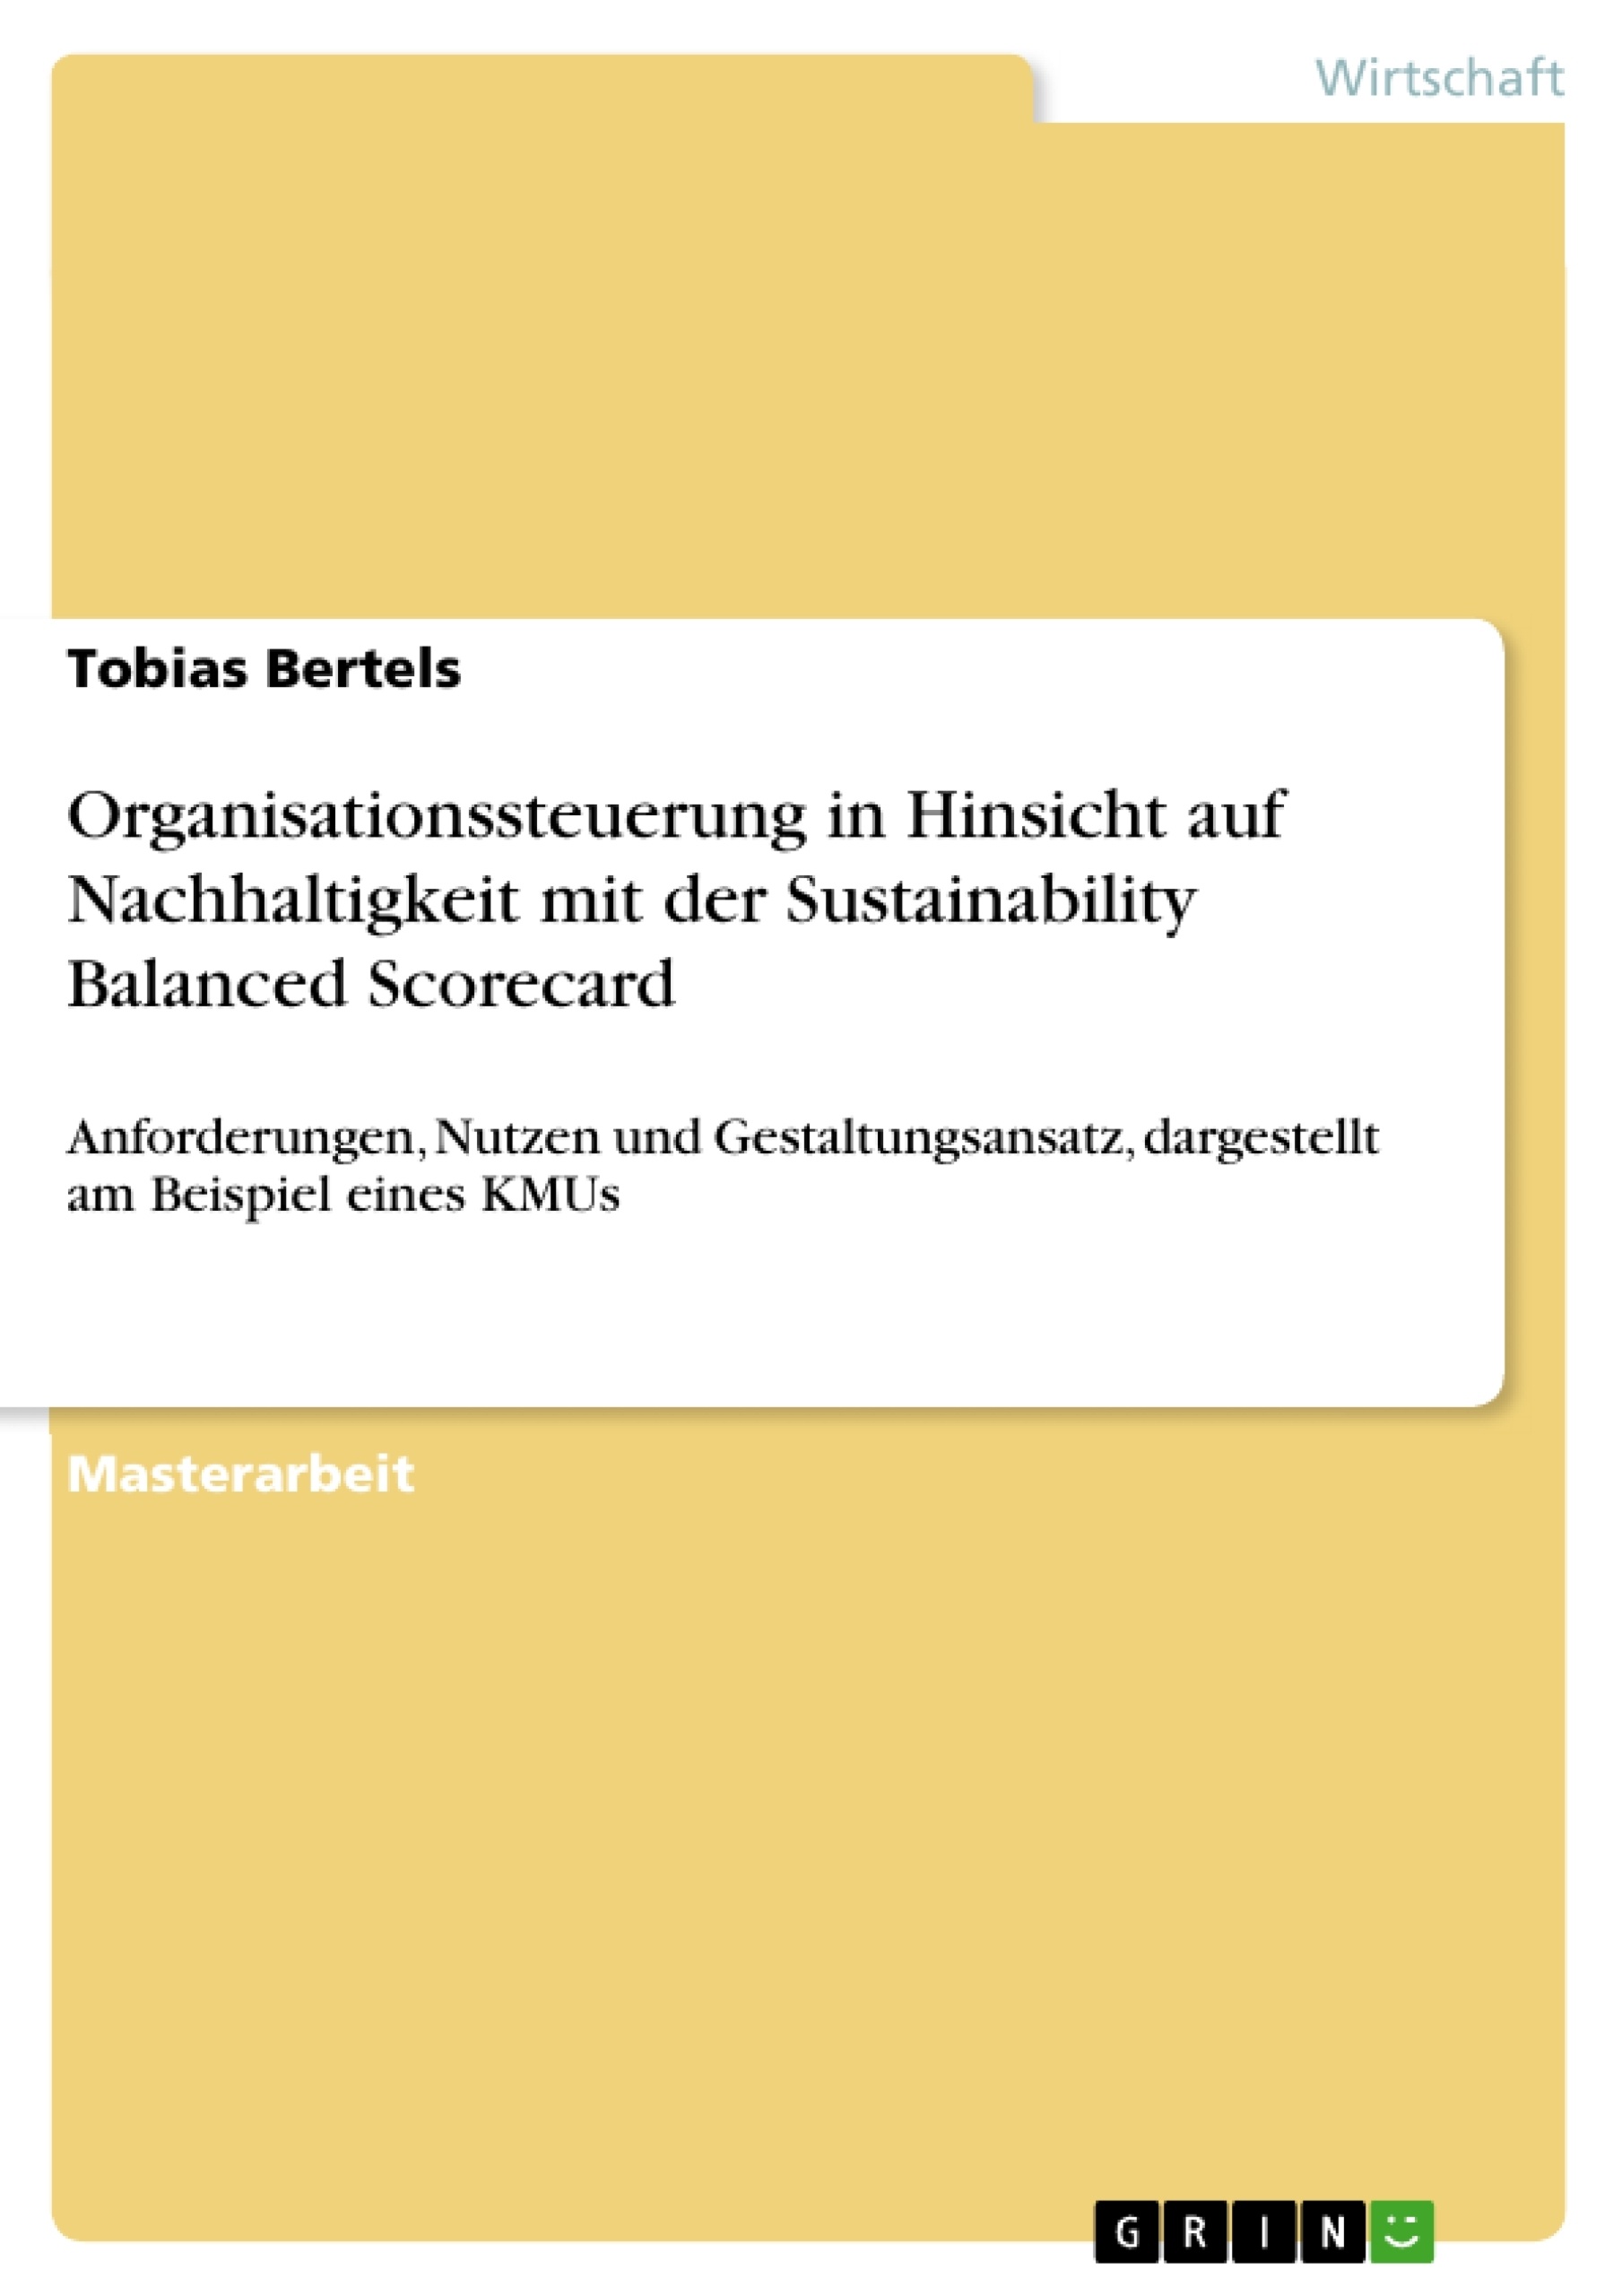 Title: Organisationssteuerung in Hinsicht auf Nachhaltigkeit mit der Sustainability Balanced Scorecard